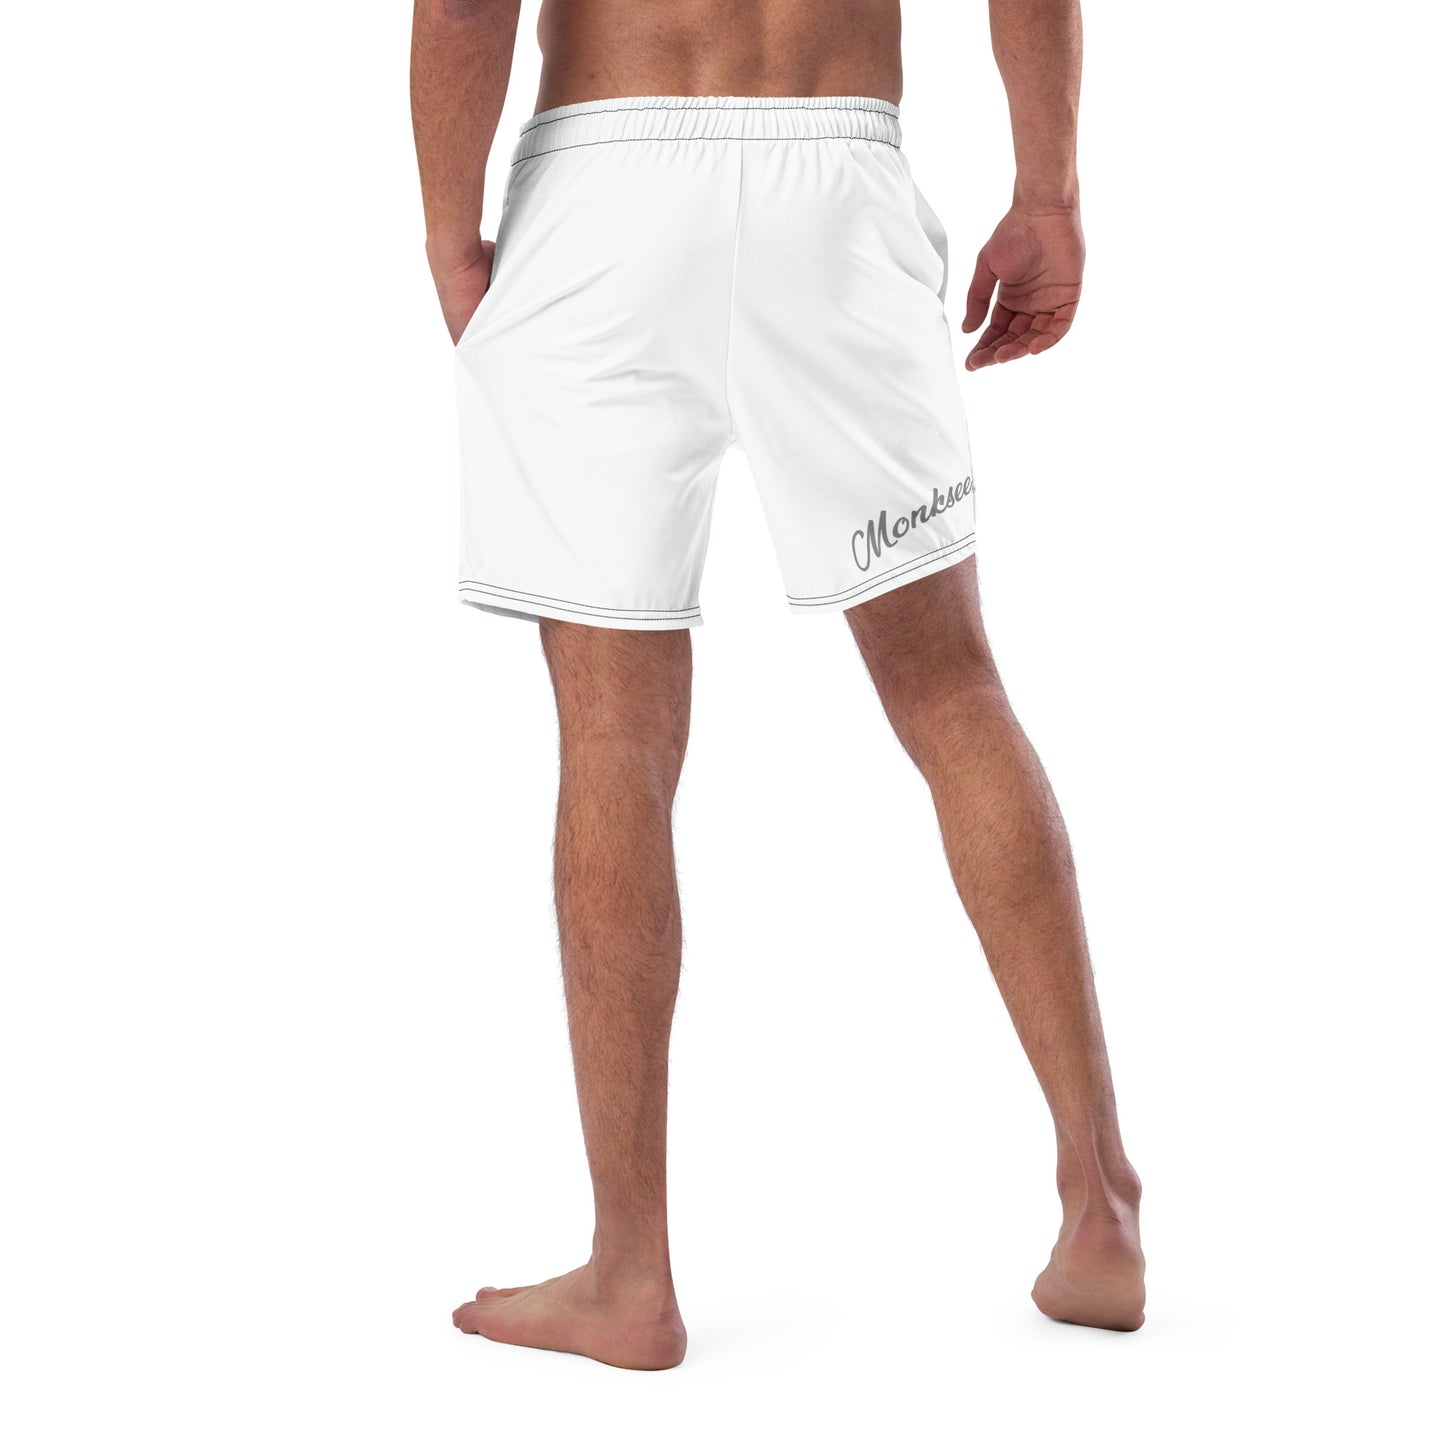 Monksee Face - Mens Board shorts